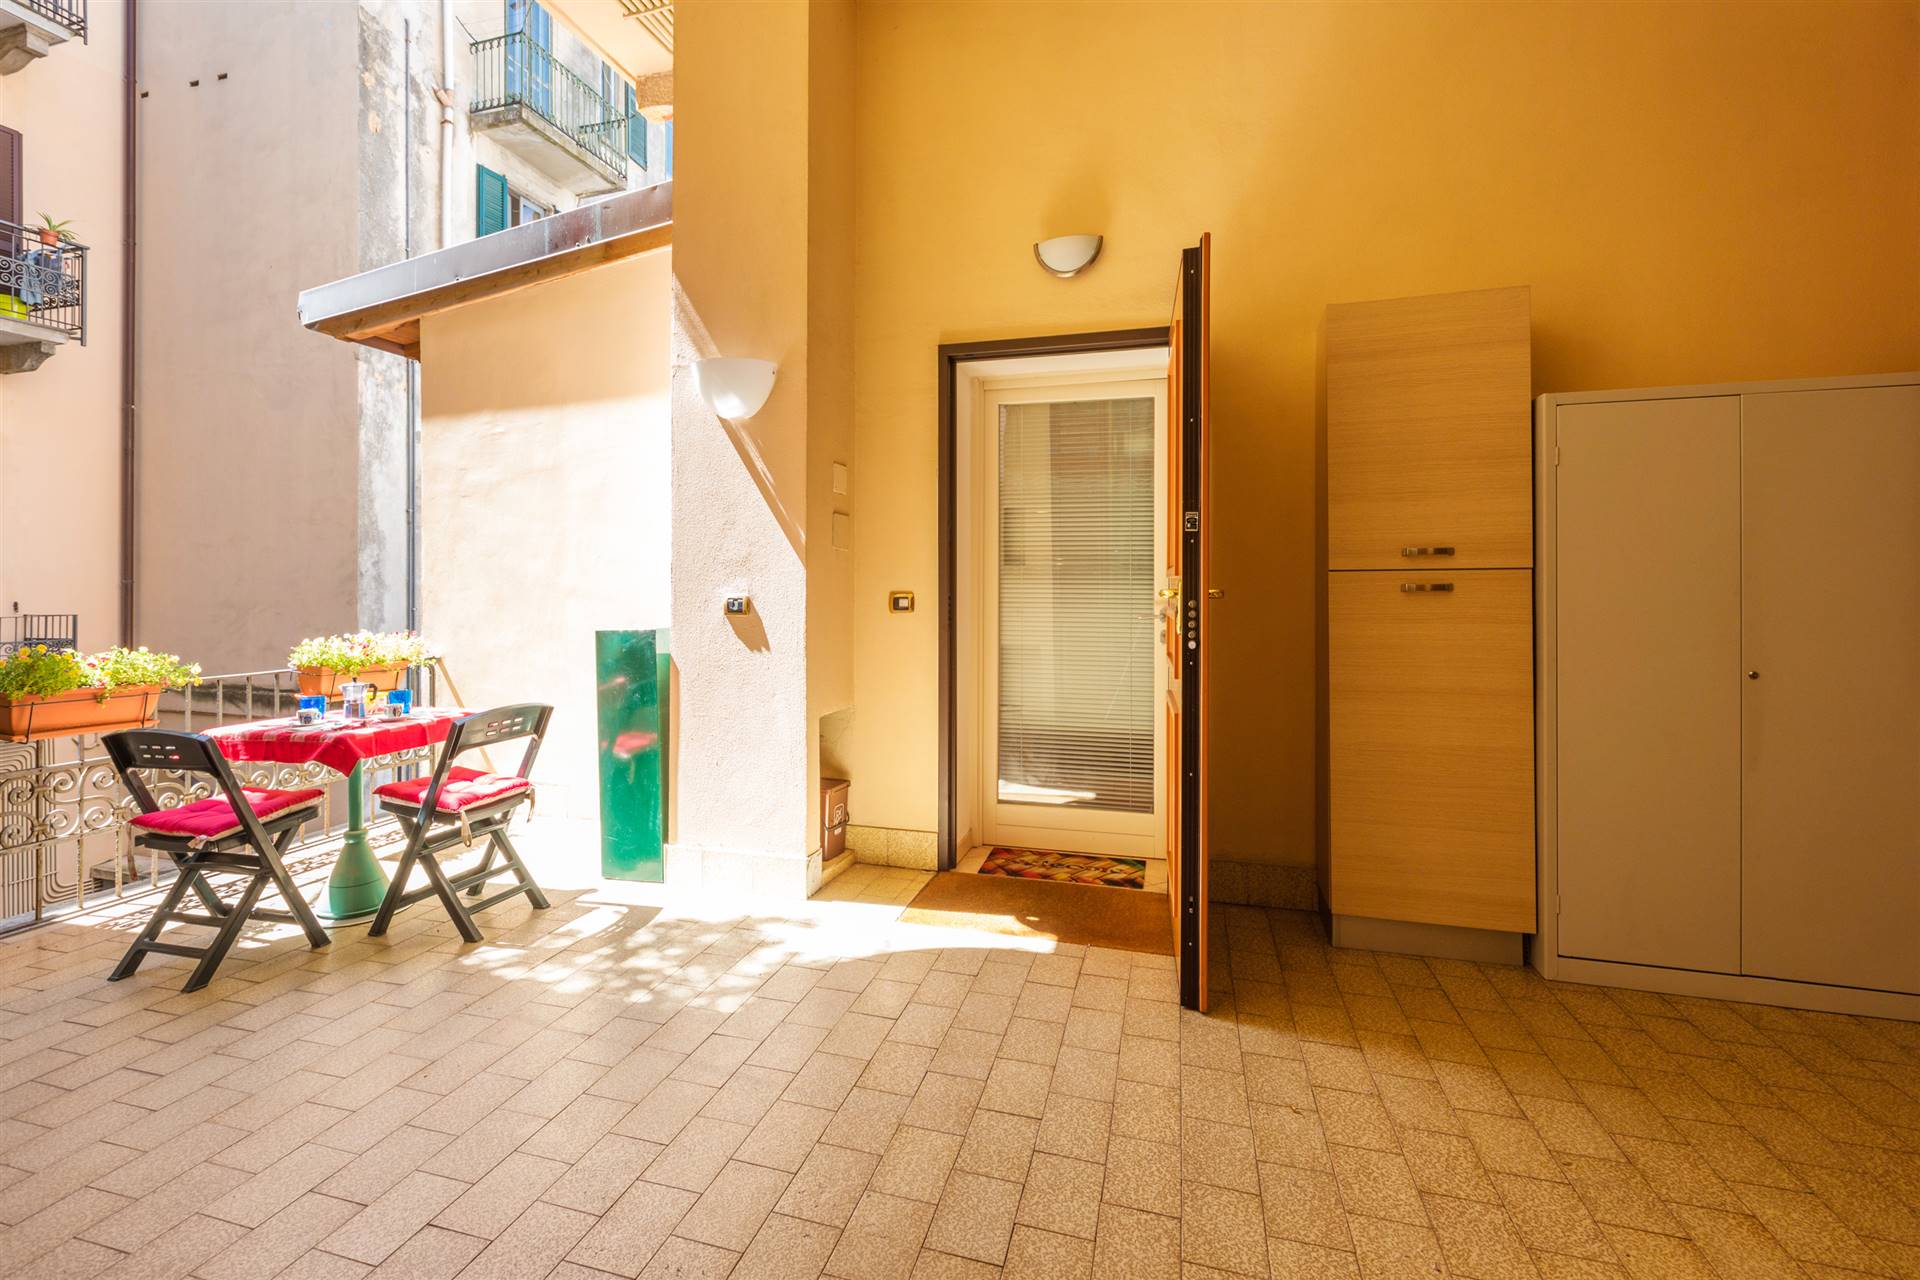 Appartamento in vendita a Lecco, 2 locali, zona Località: CENTRO CITTÀ, prezzo € 210.000 | CambioCasa.it